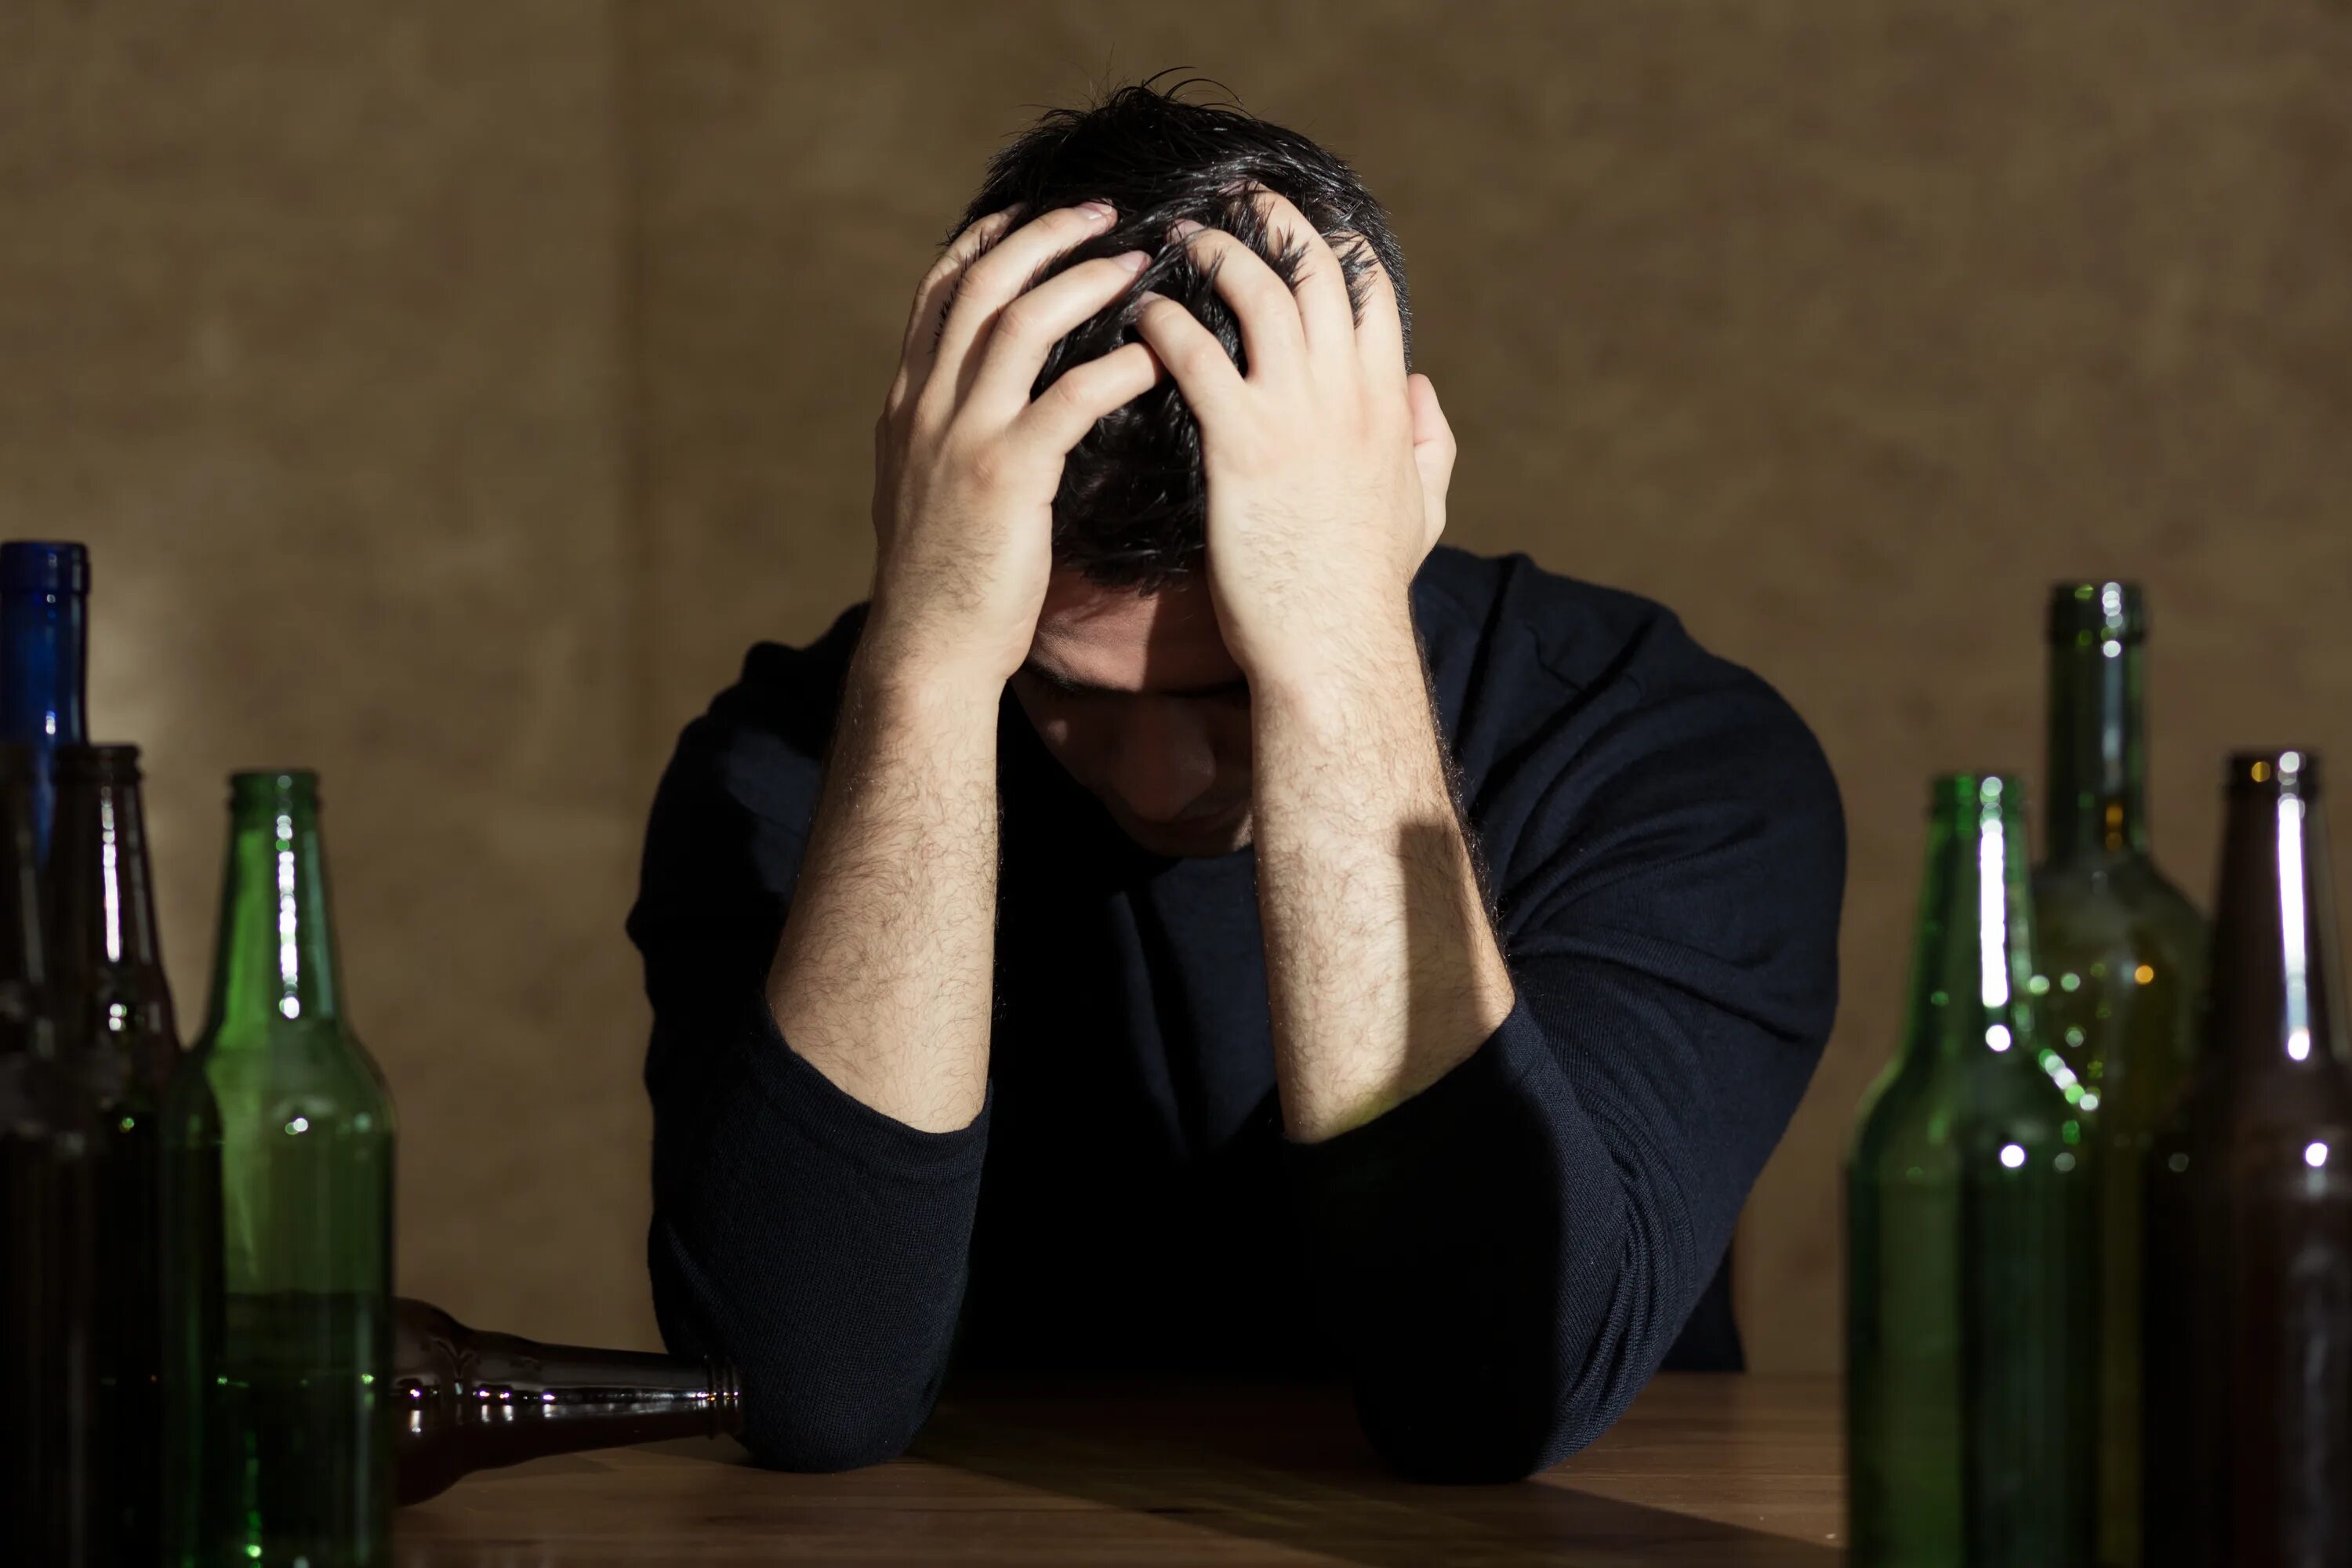 Картинка пьющий человек. Пьющий человек. Алкоголик в депрессии. Люди с алкогольной зависимостью. Пьющий алкоголь человек.